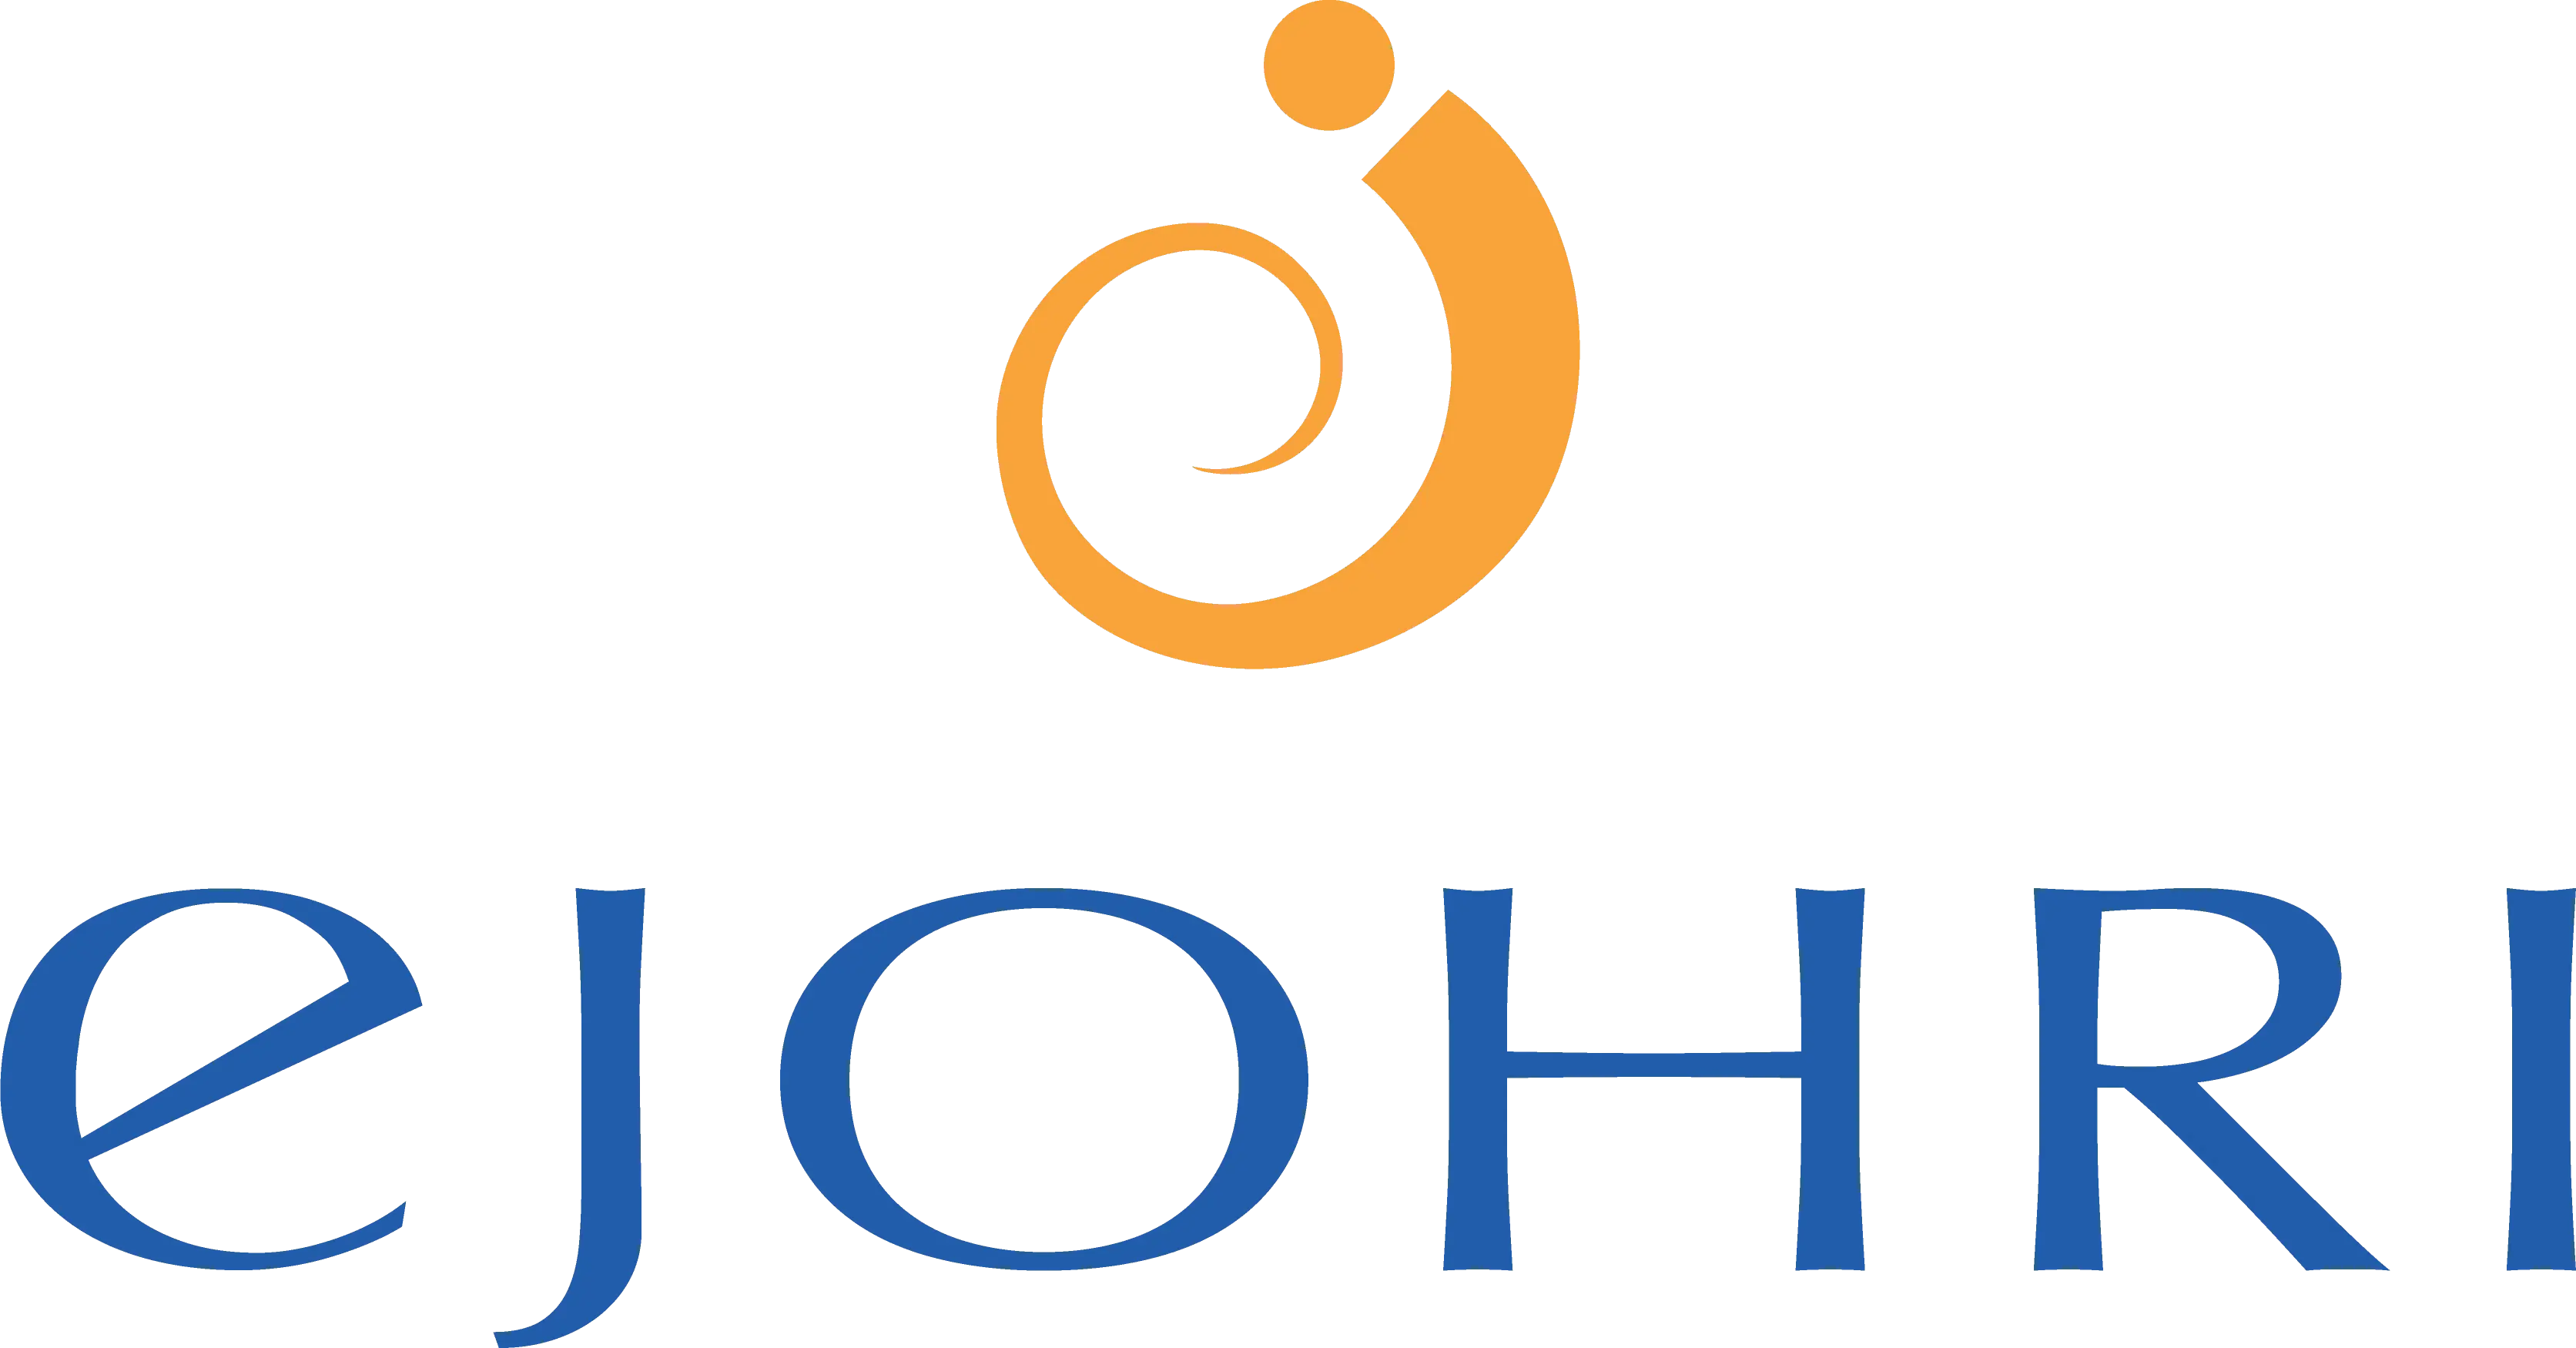 ejohri_logo.png